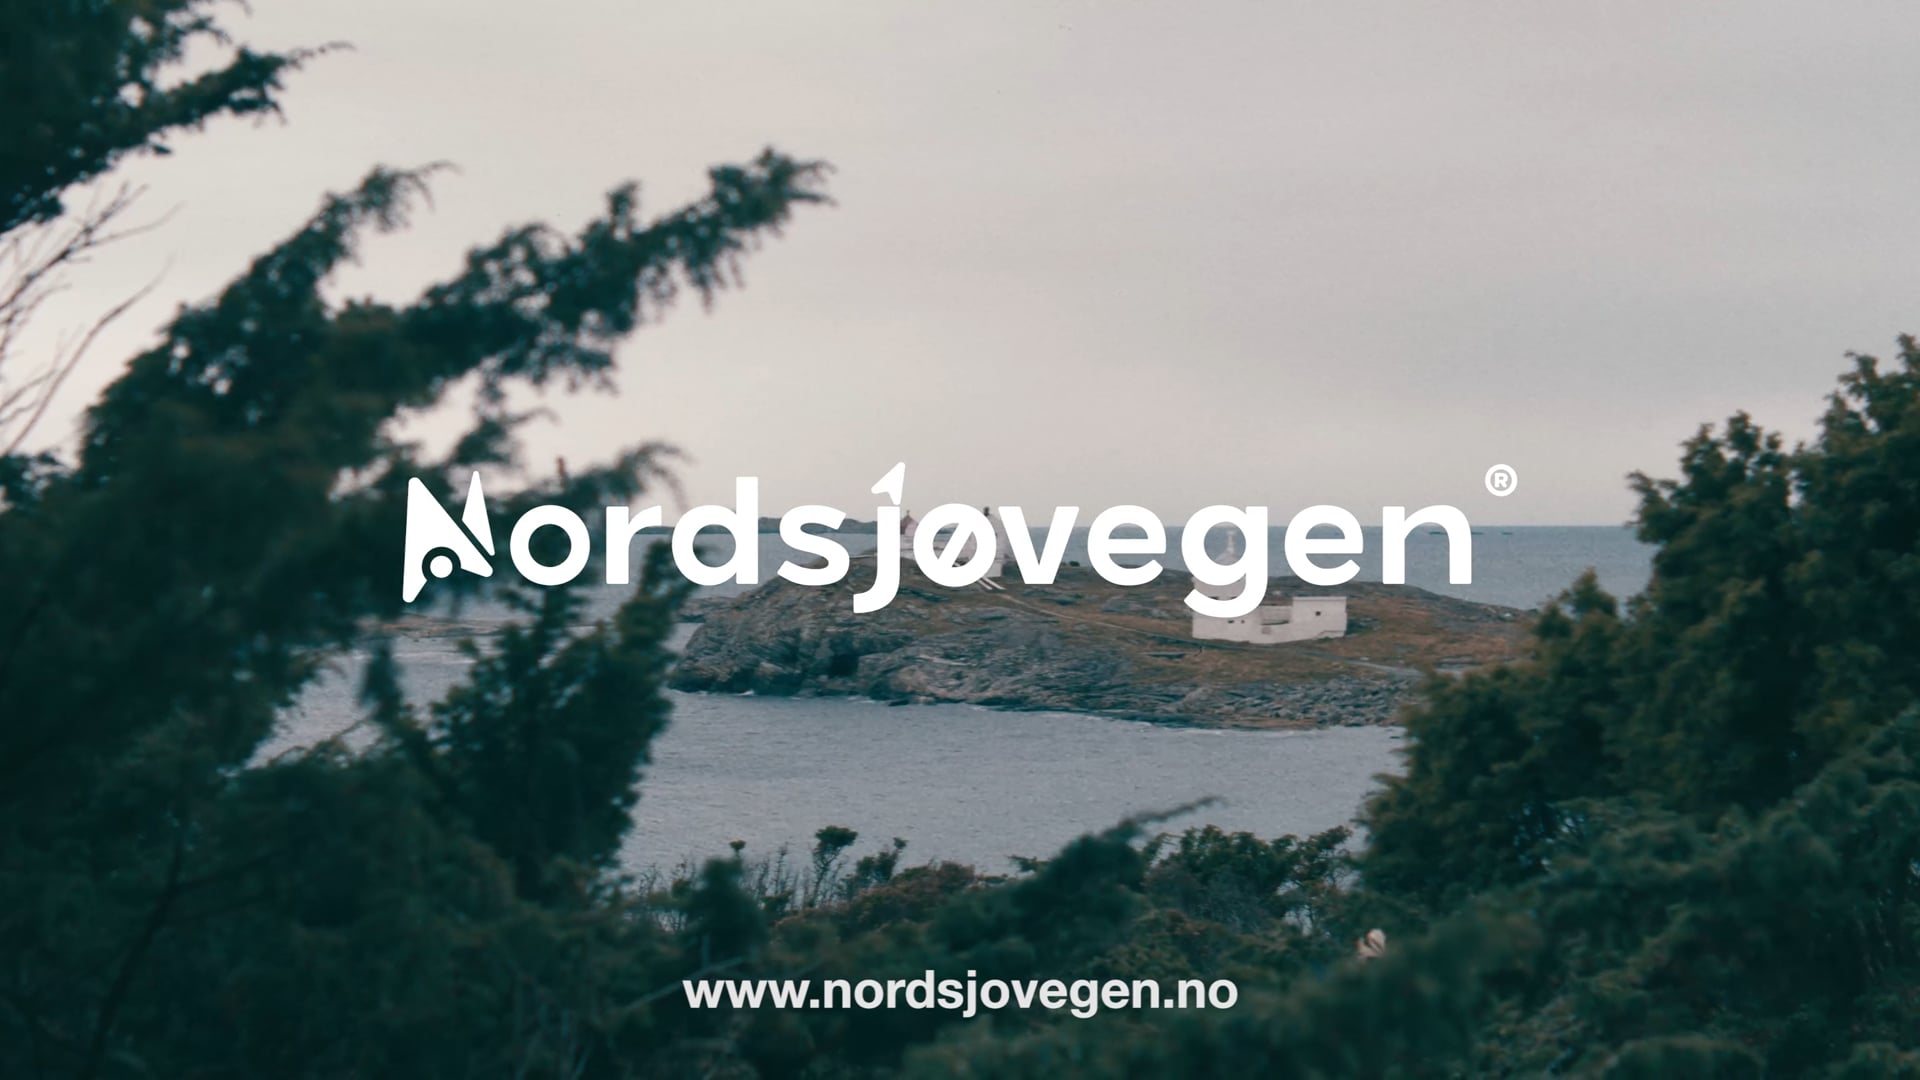 Nordsjøvegen - Make your own stories